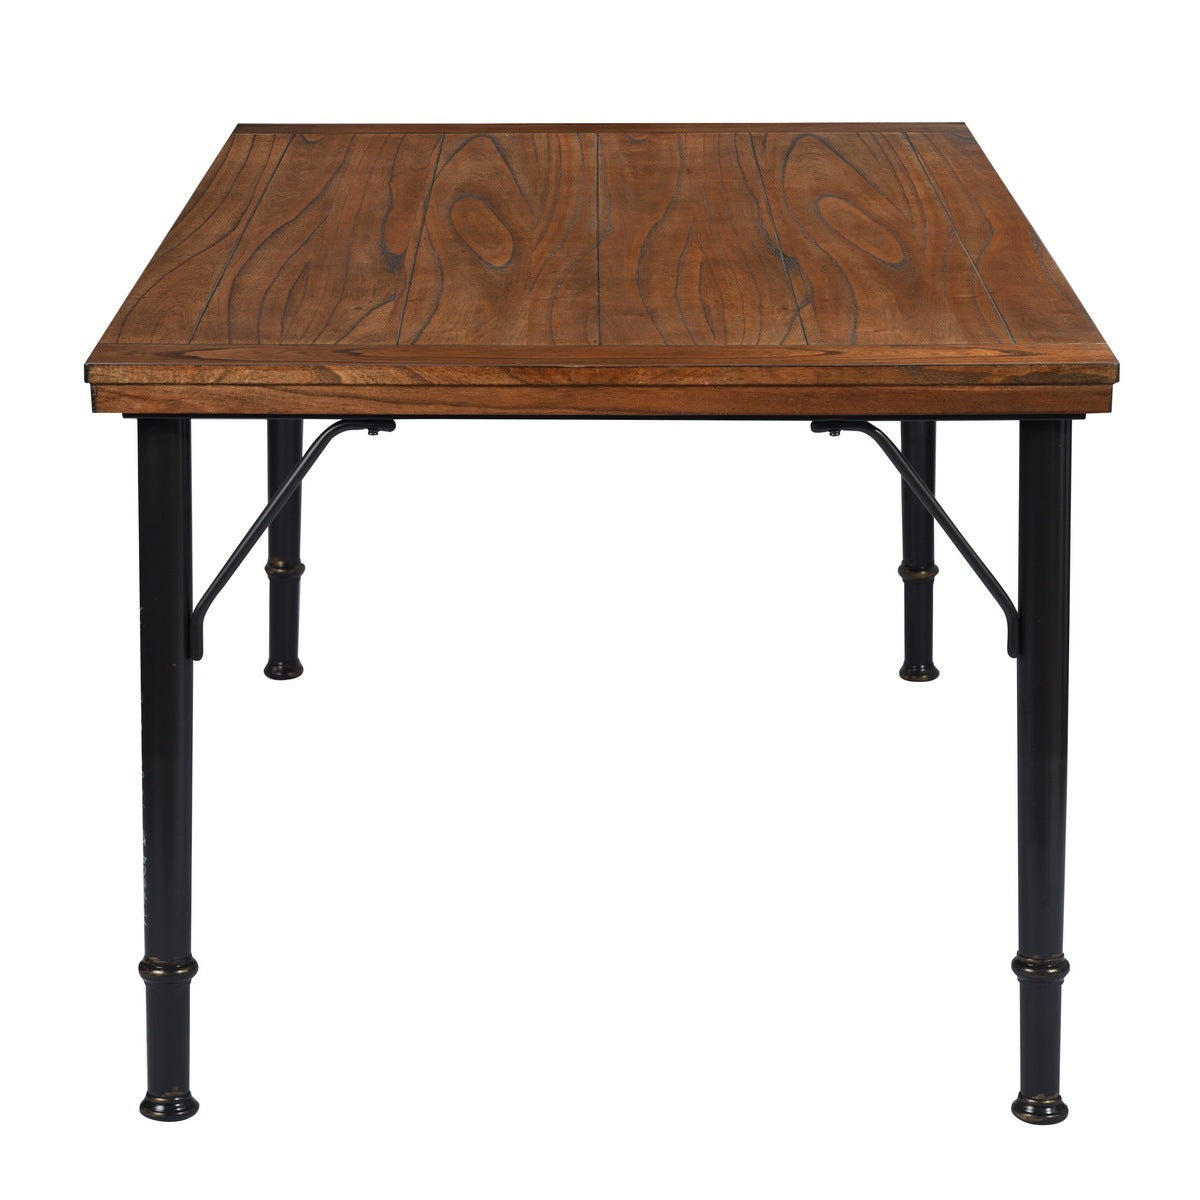 70.1" Solid wood veneered dining table, Rustic Brown & Black